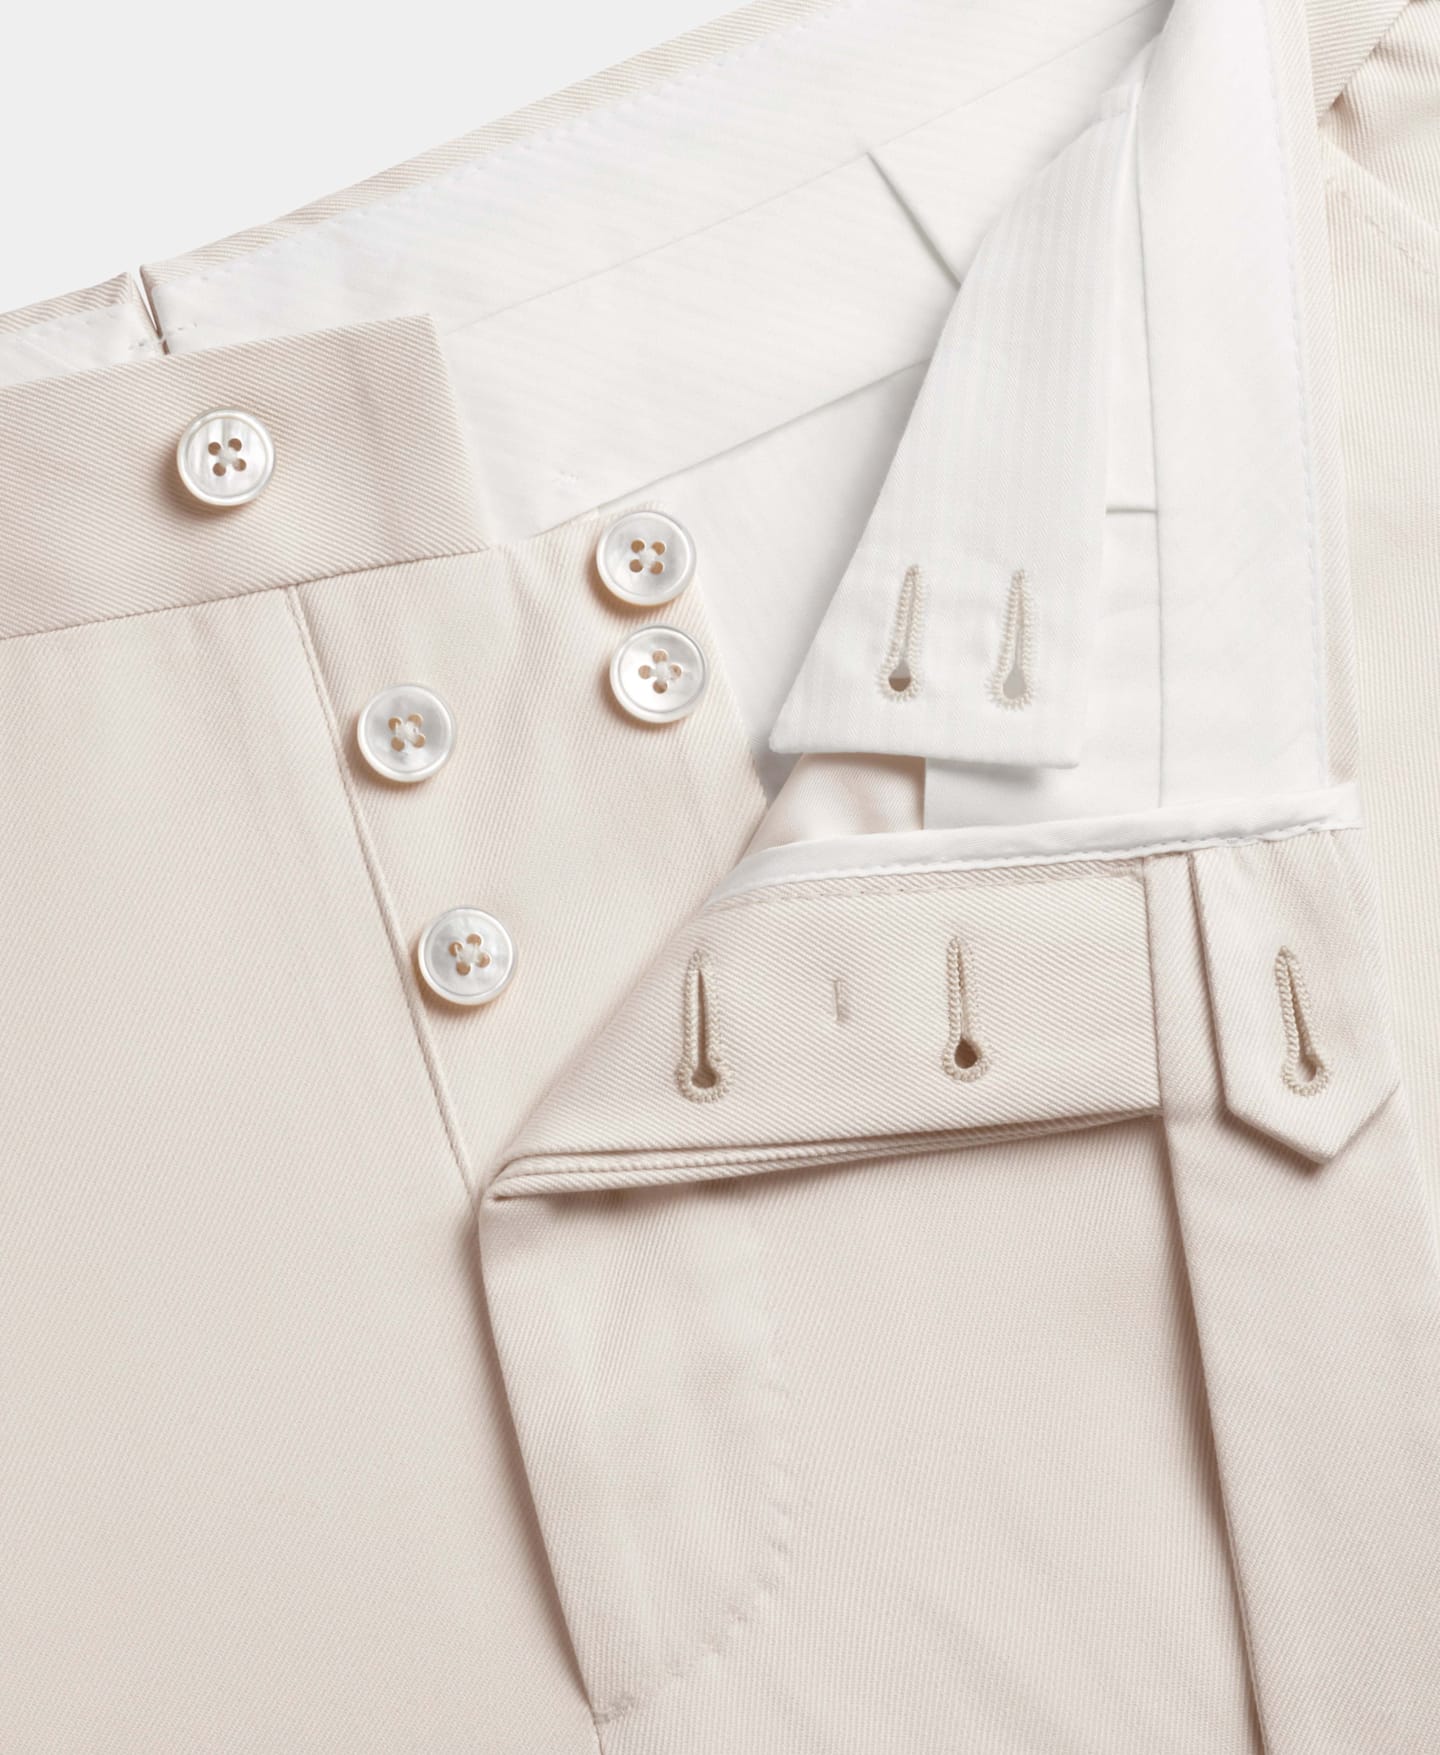 Pantalón marrón claro con bragueta de botones abierta.